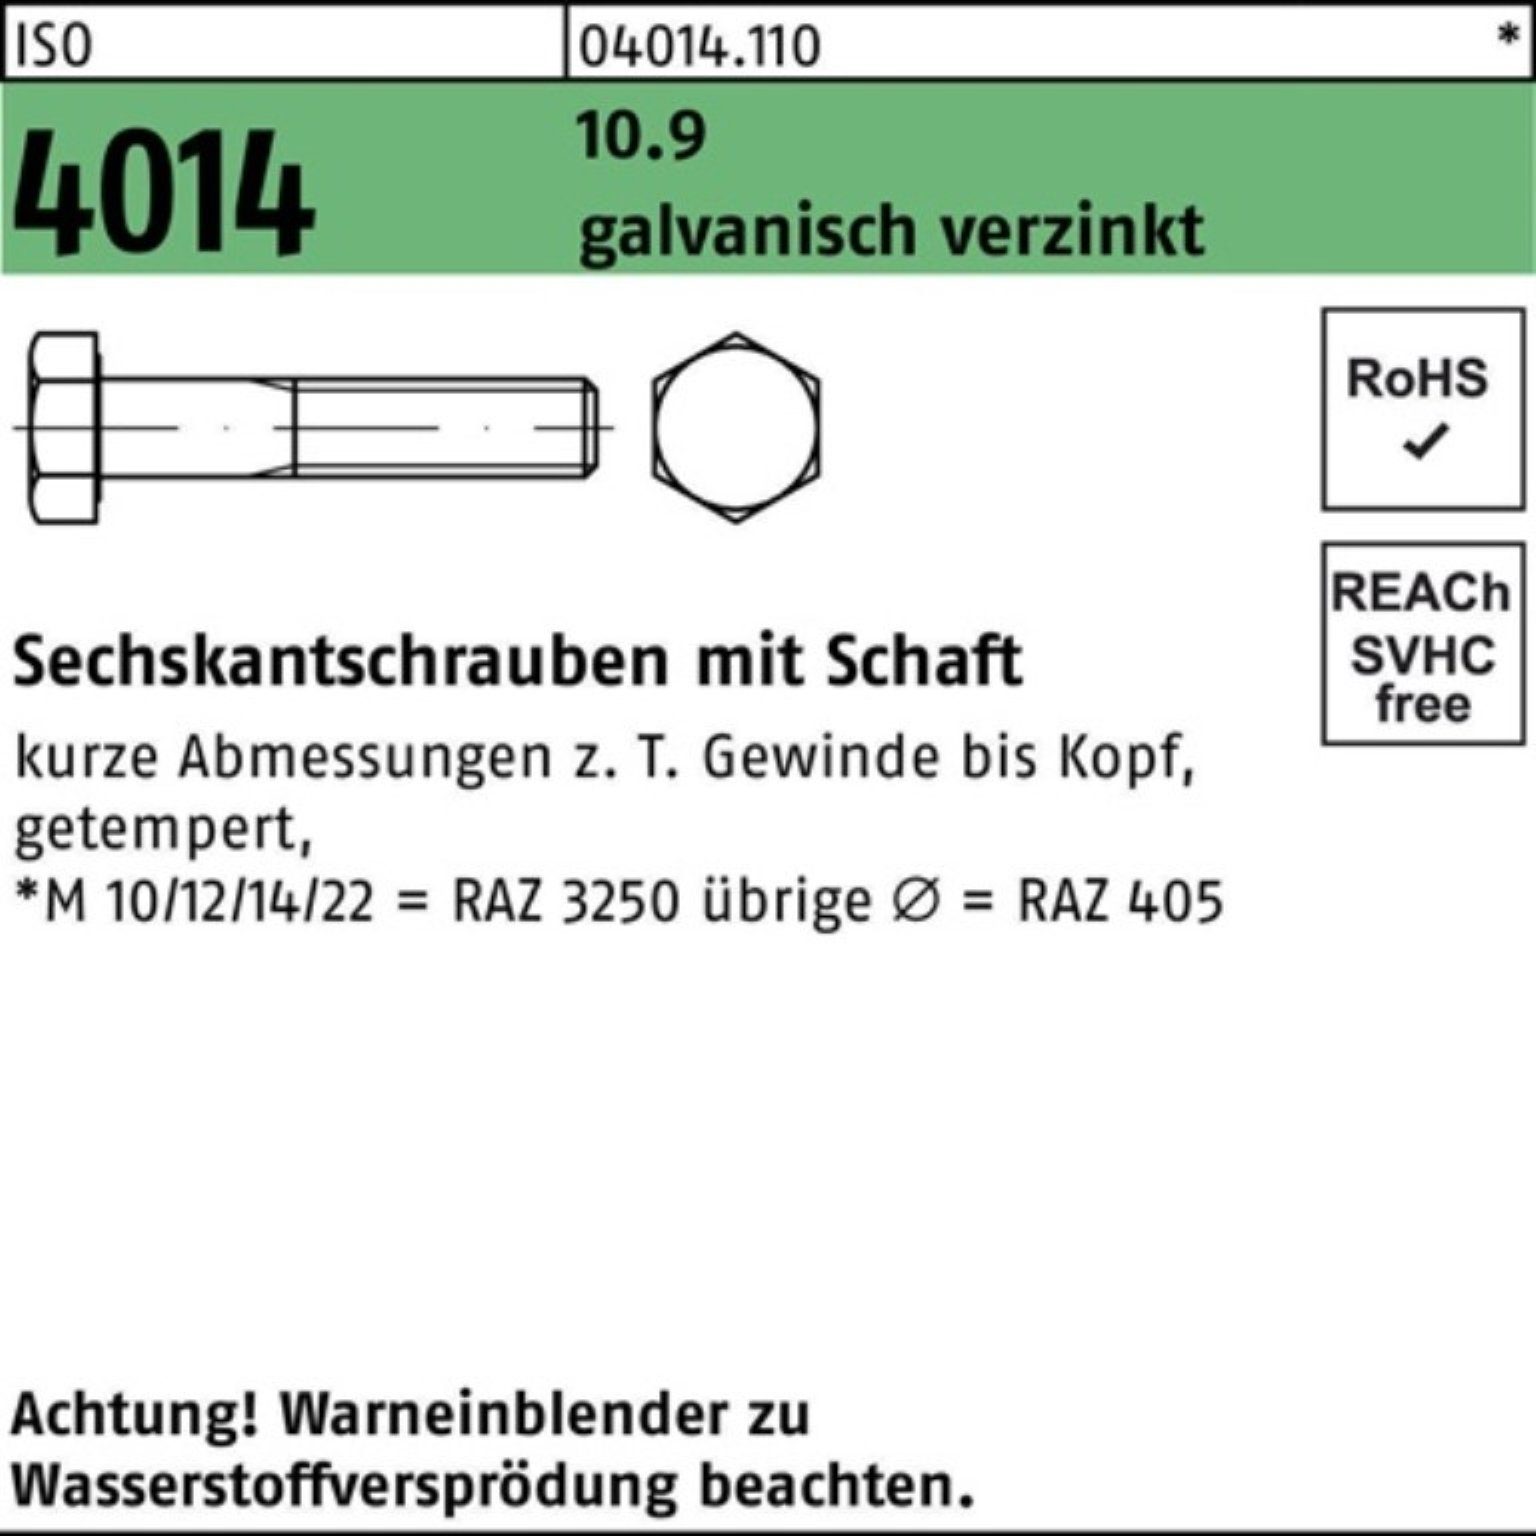 Bufab Sechskantschraube 100er Sechskantschraube 10.9 galv.verz. Pack 4014 ISO Schaft 220 M20x